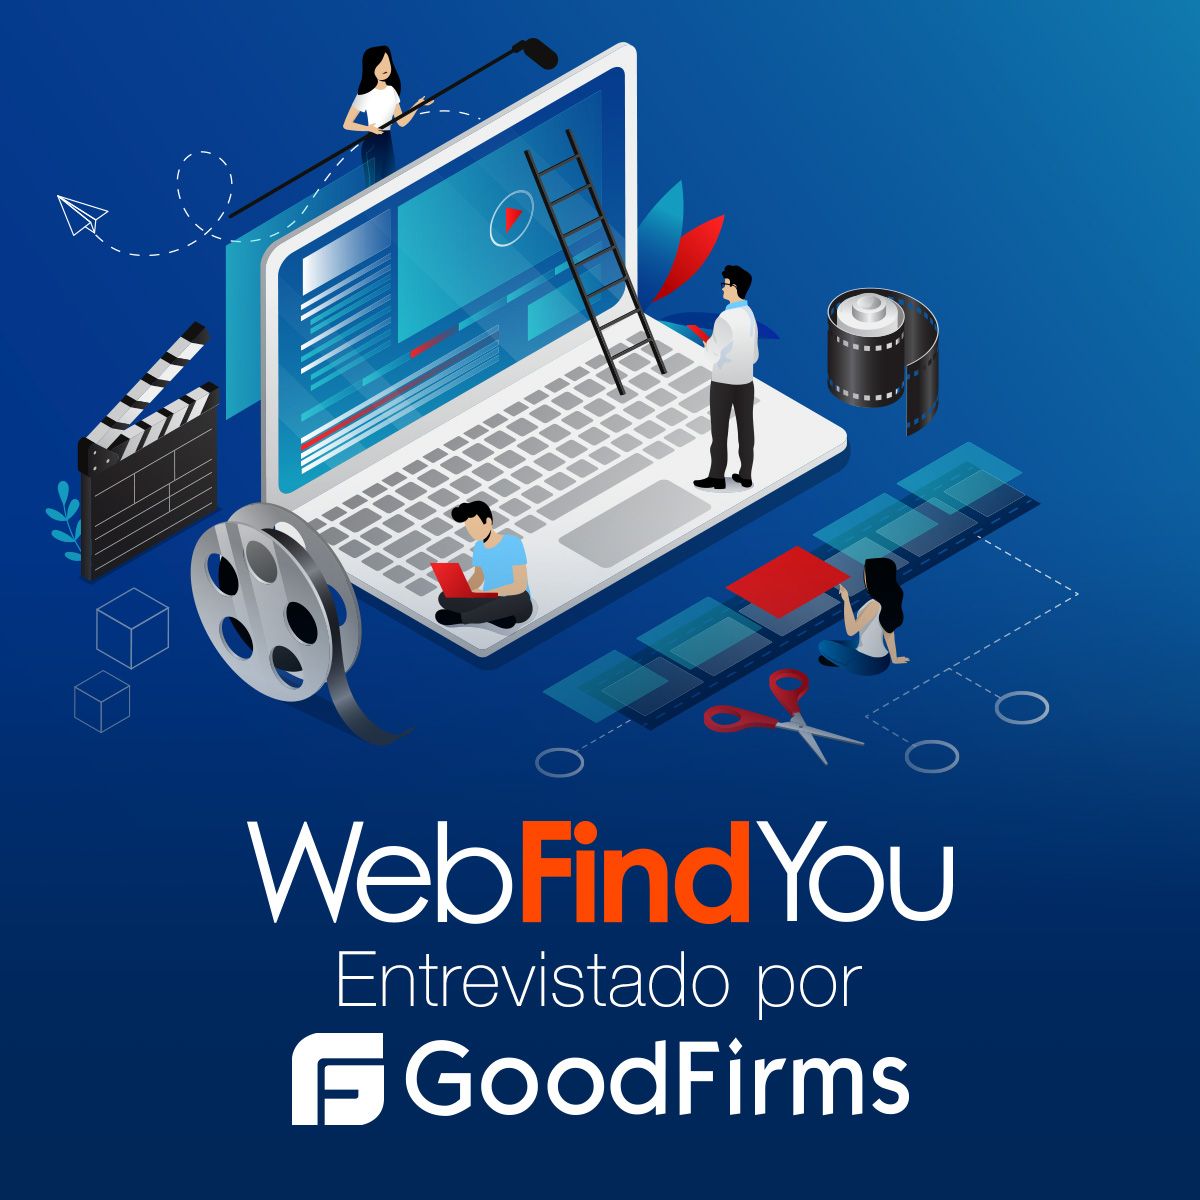 WebFindYou Entrevistado por GoodFirms